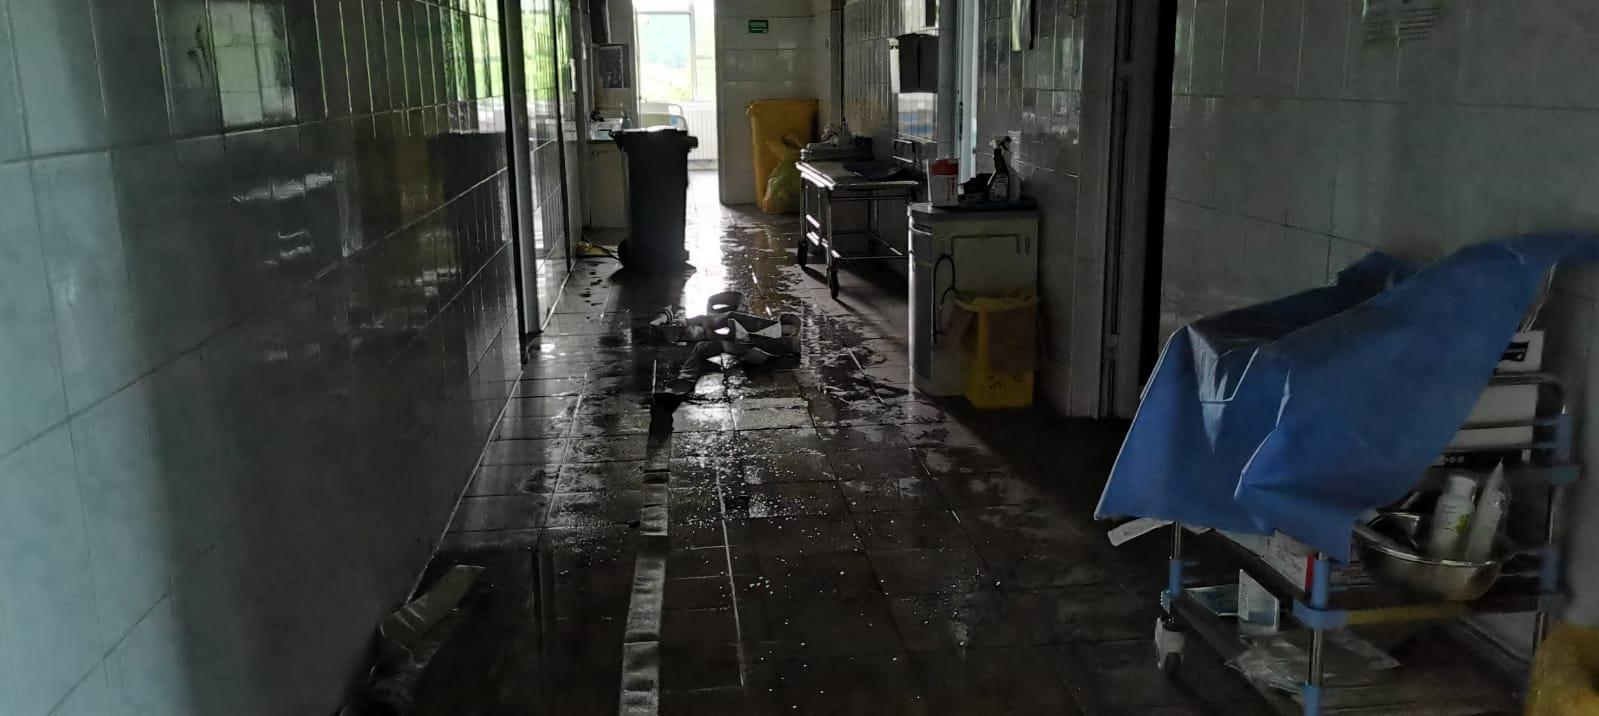 Primele imagini din salonul distrus de flăcări la Spitalului de Copii din Iaşi